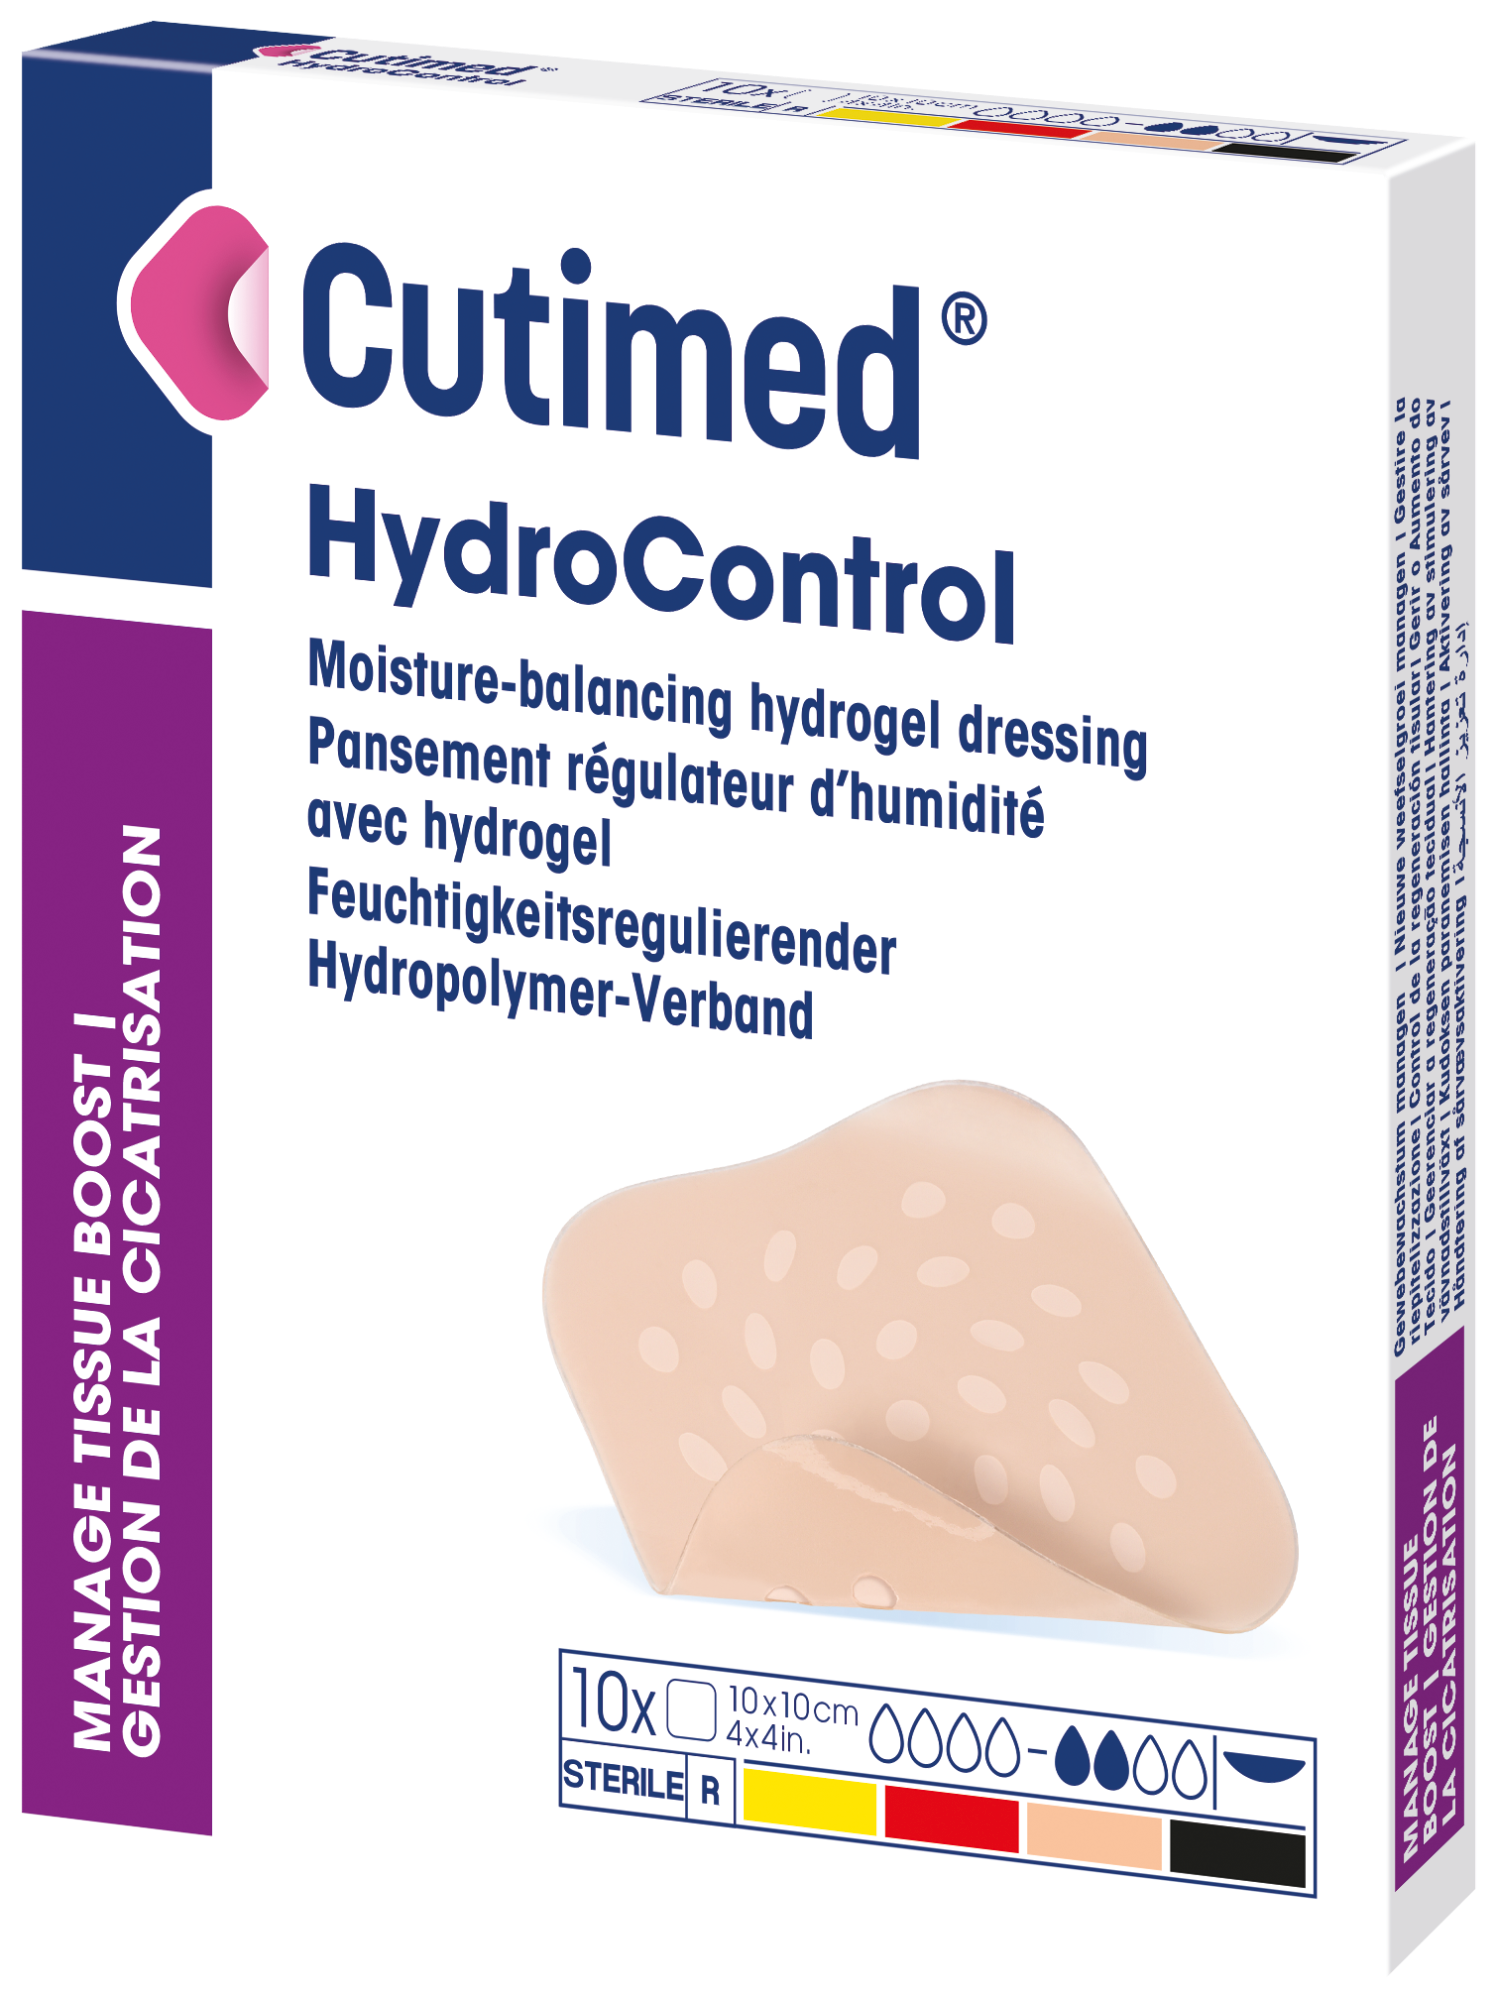 Bilde som viser et pakningsbilde av Cutimed® HydroControl